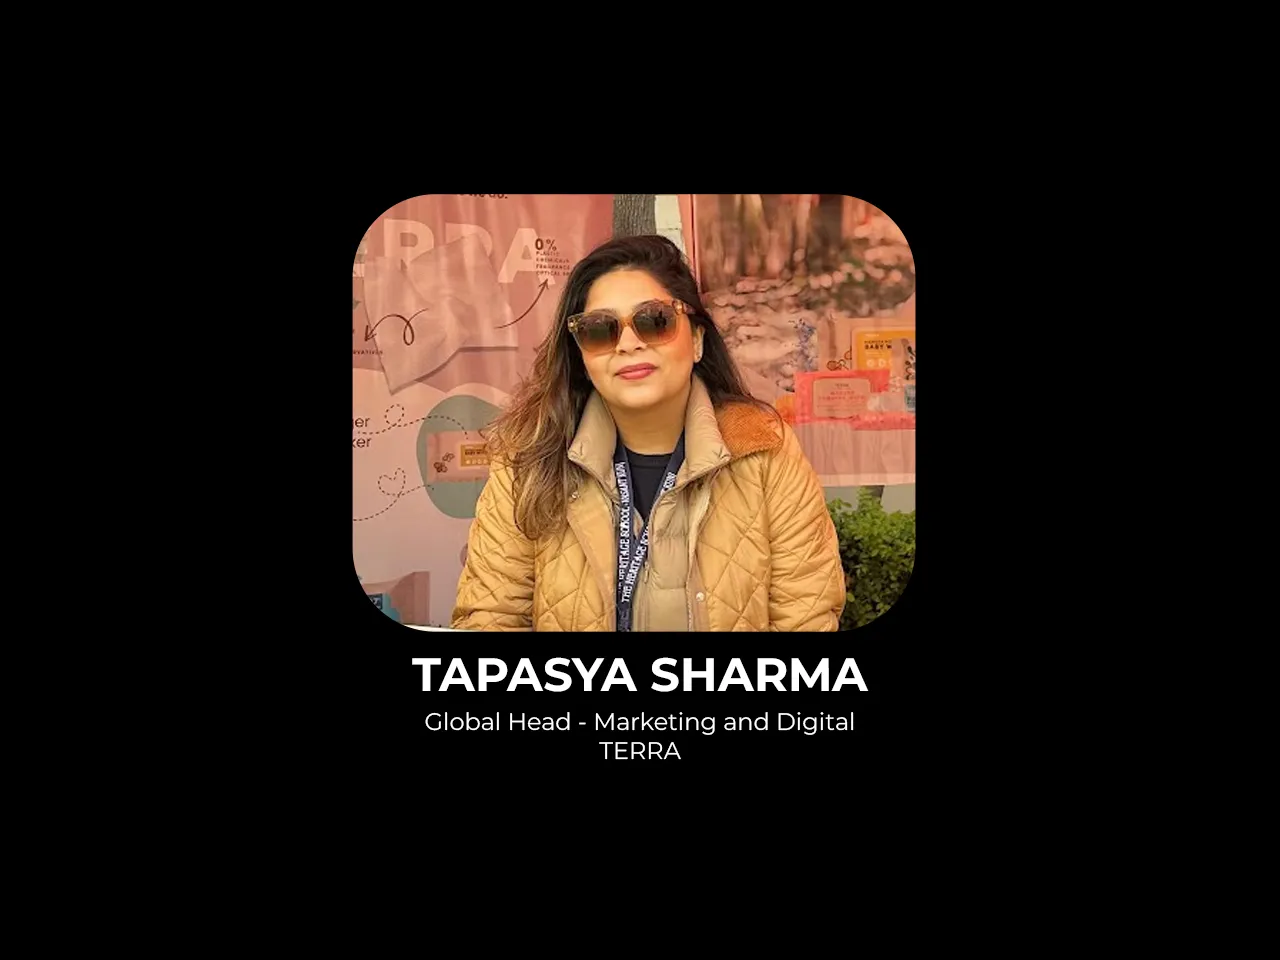 Tapasya Sharma